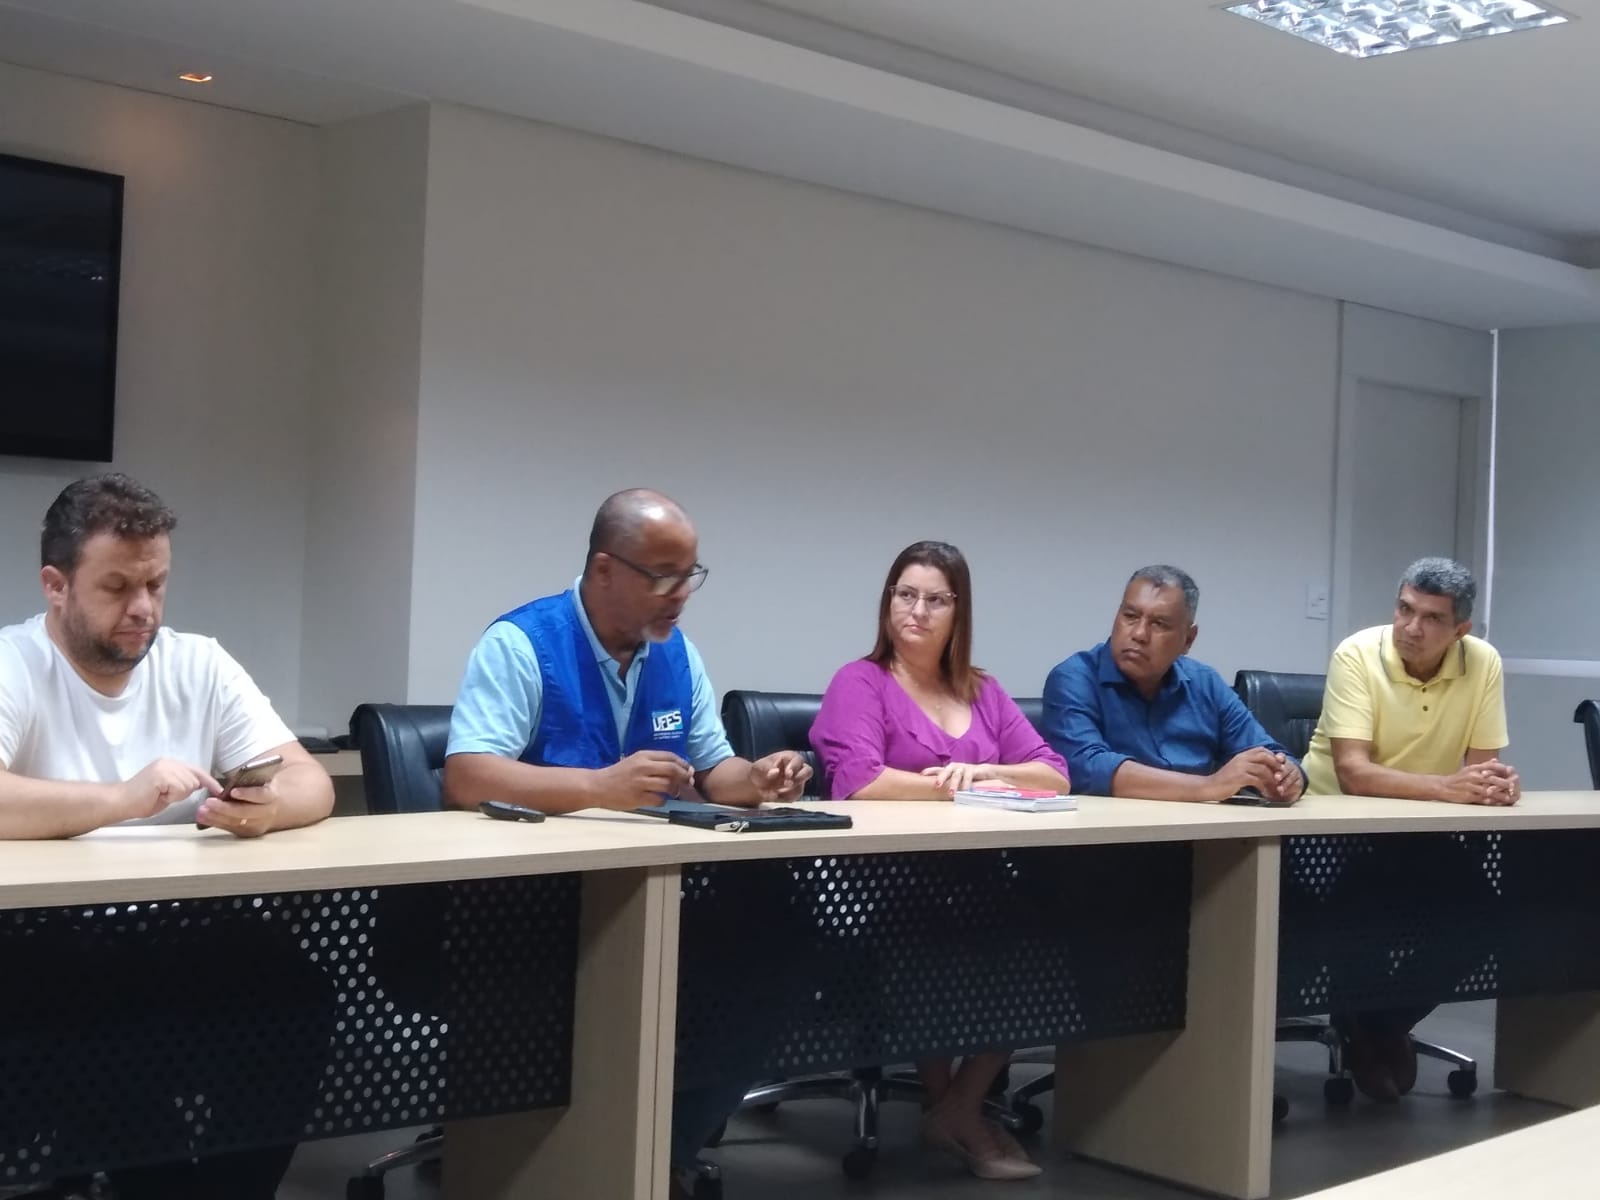 Recorte da imagem da reunião, onde aparecem cinco participantes, incluindo o prefeito Sérgio Vidigal, sentados em uma mesa 